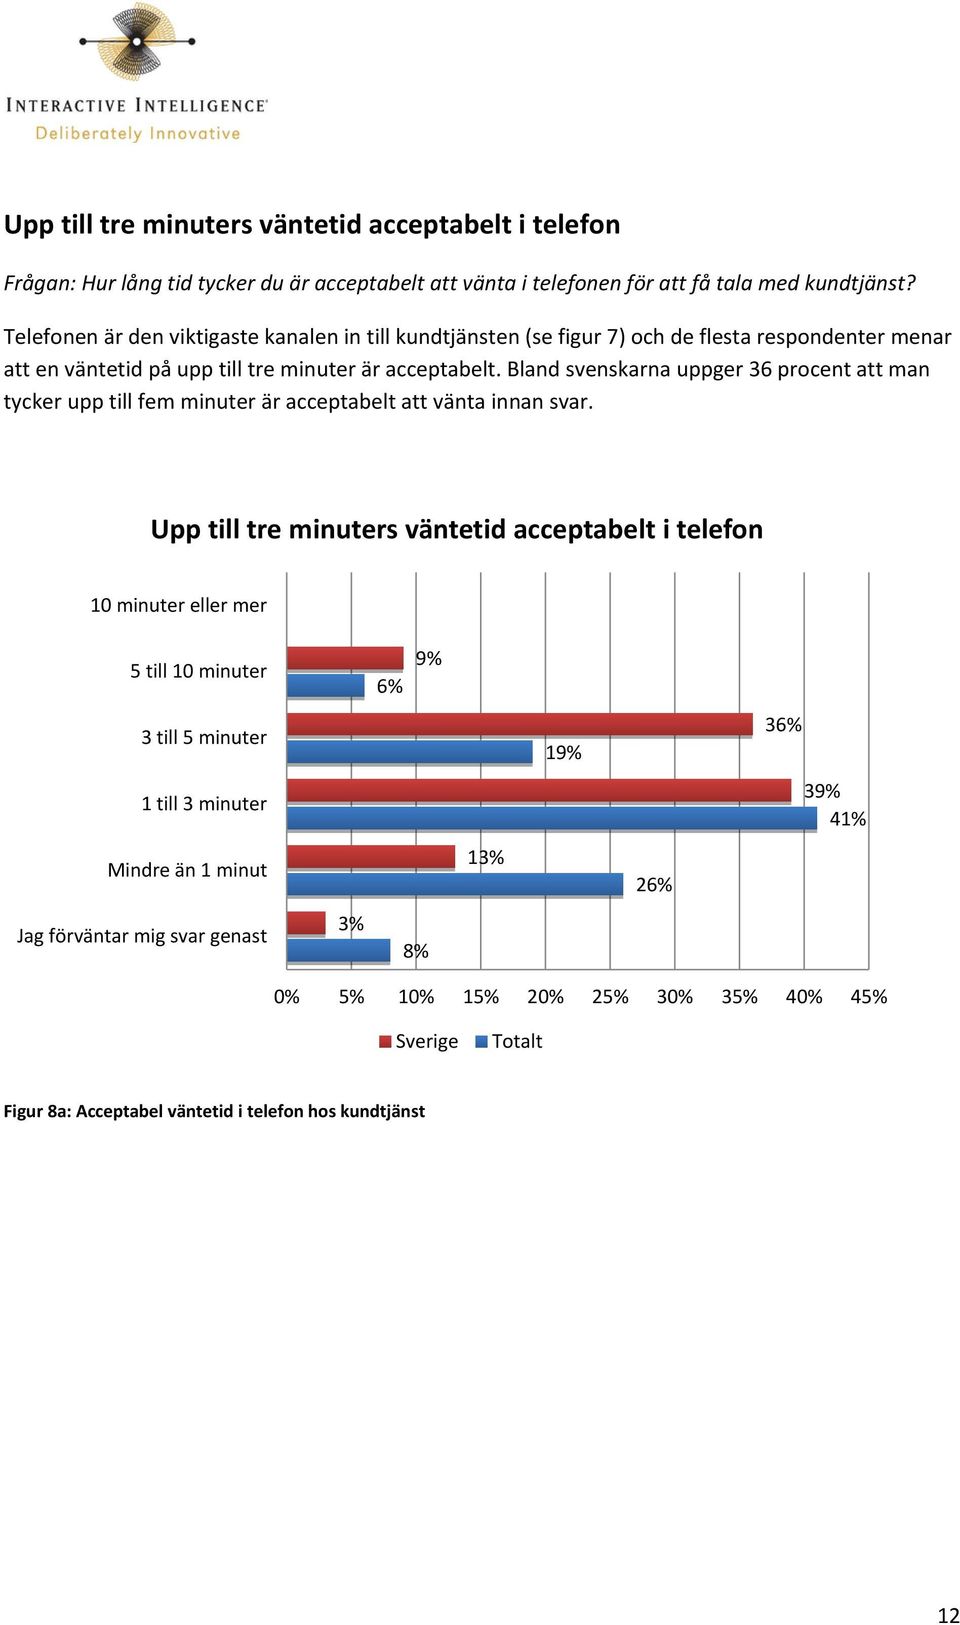 Bland svenskarna uppger 36 procent att man tycker upp till fem minuter är acceptabelt att vänta innan svar.